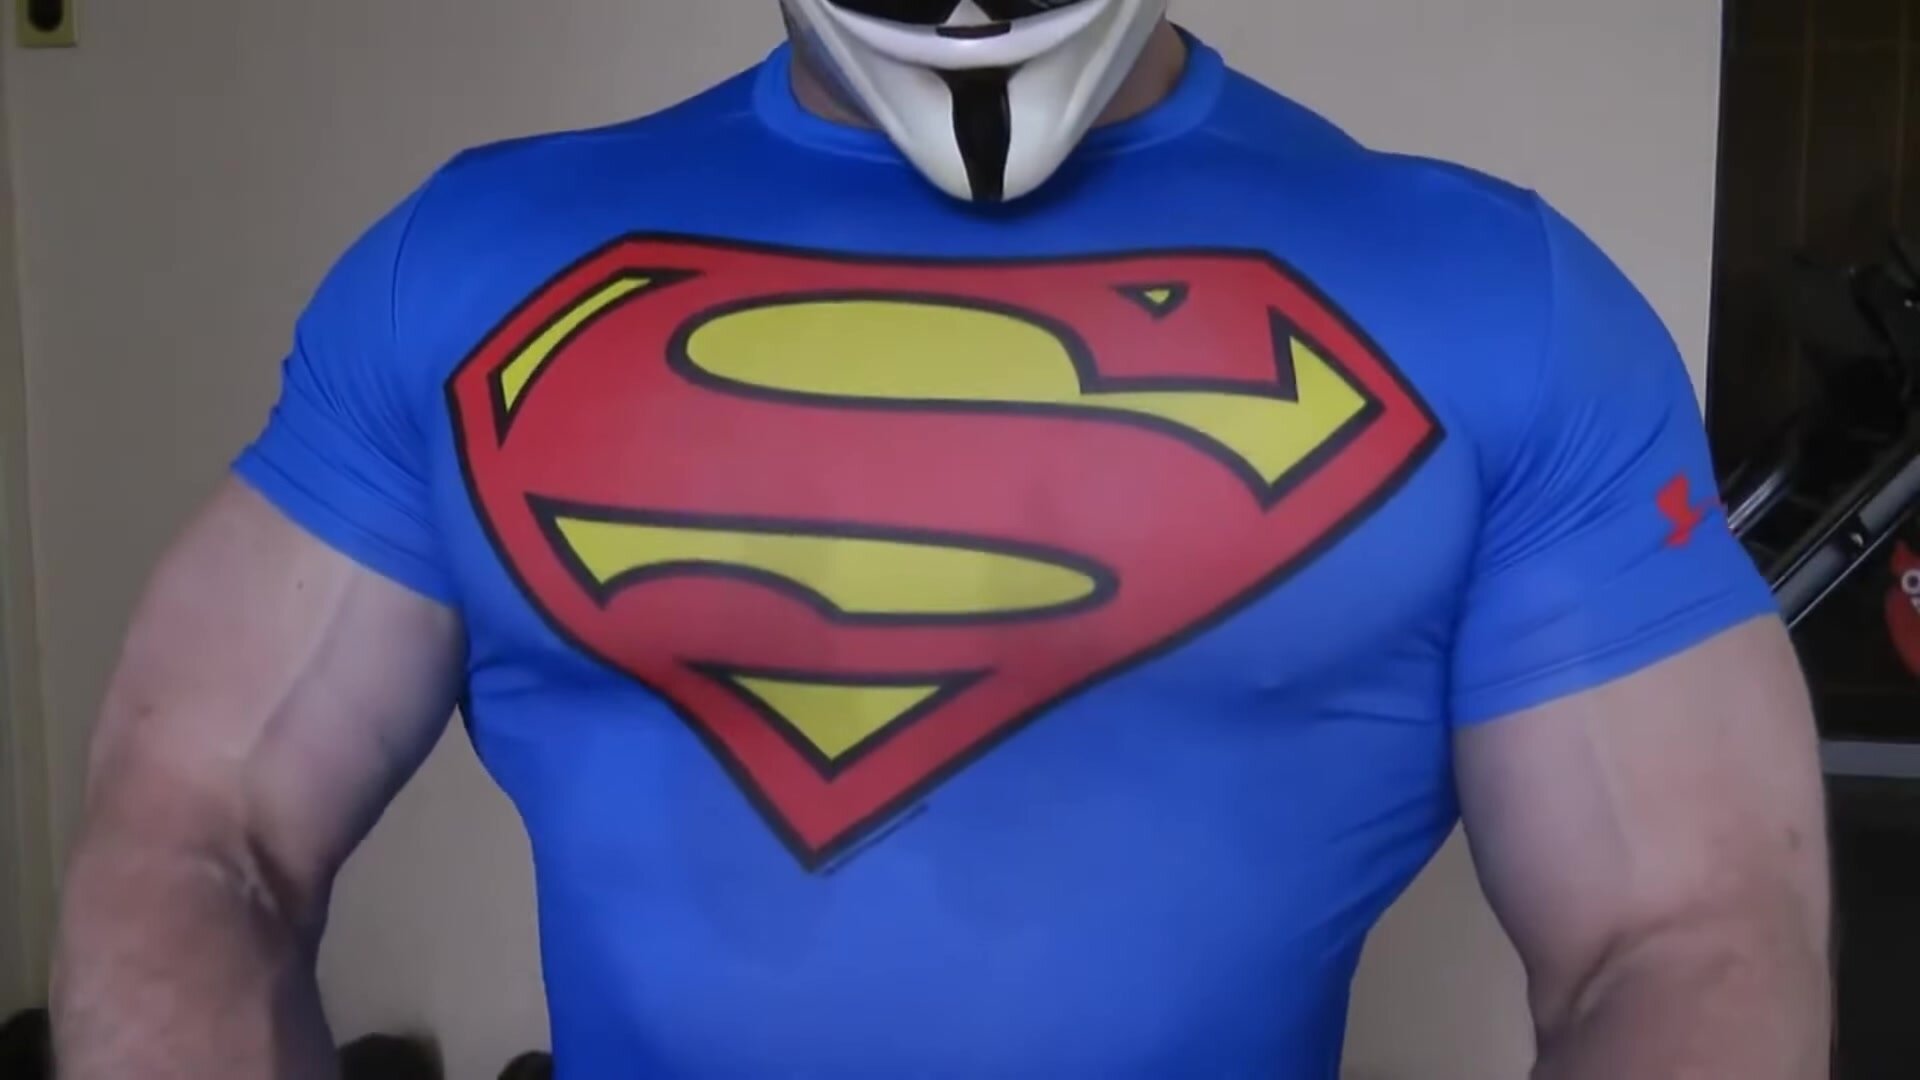 More superman pecs